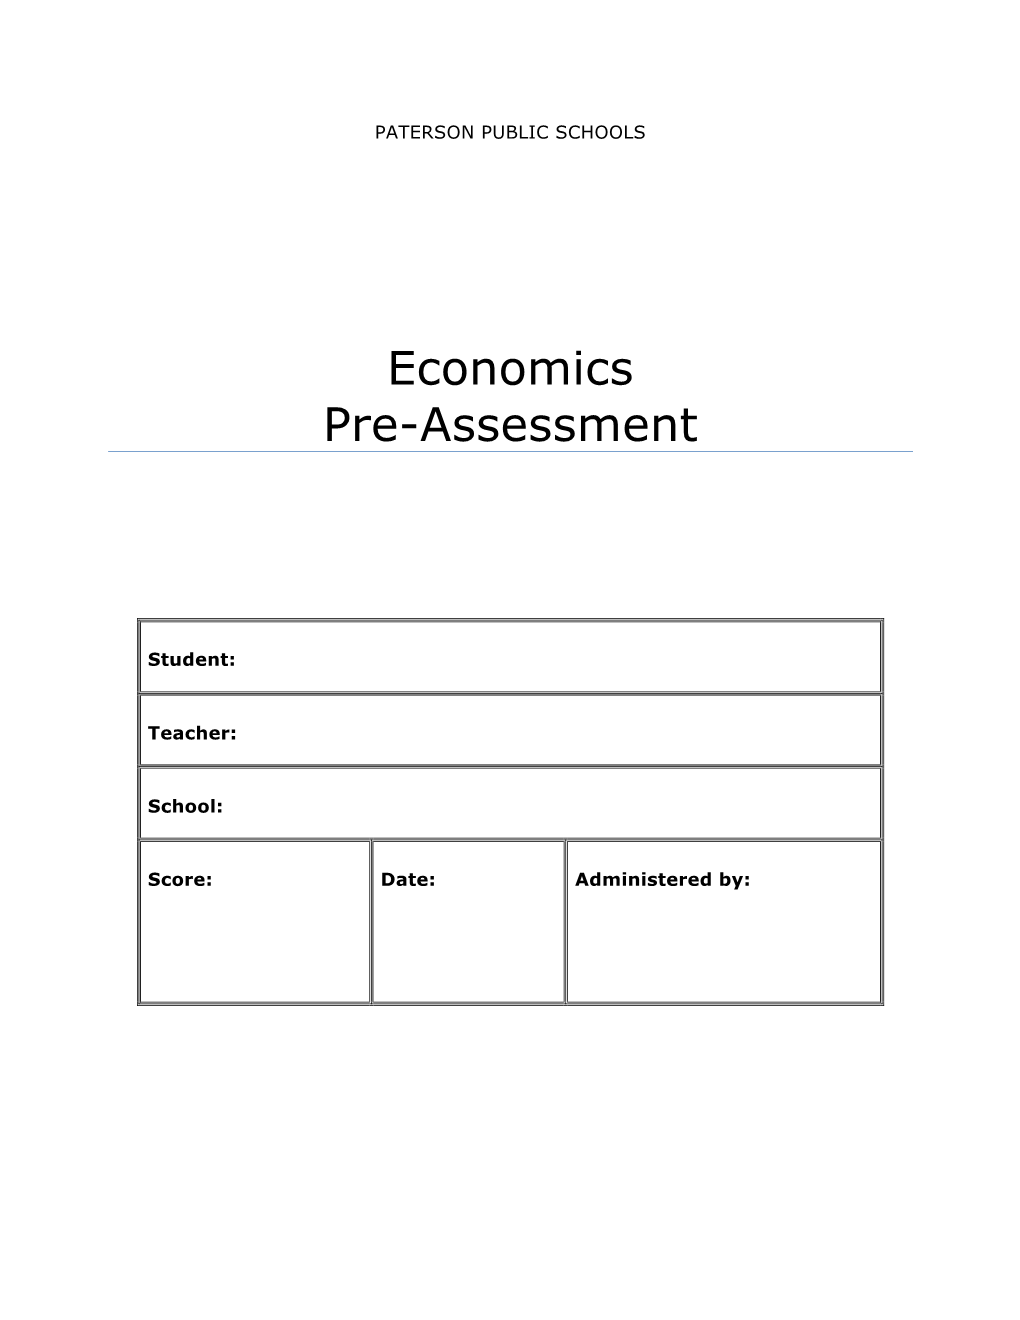 Economics Pre-Assessment